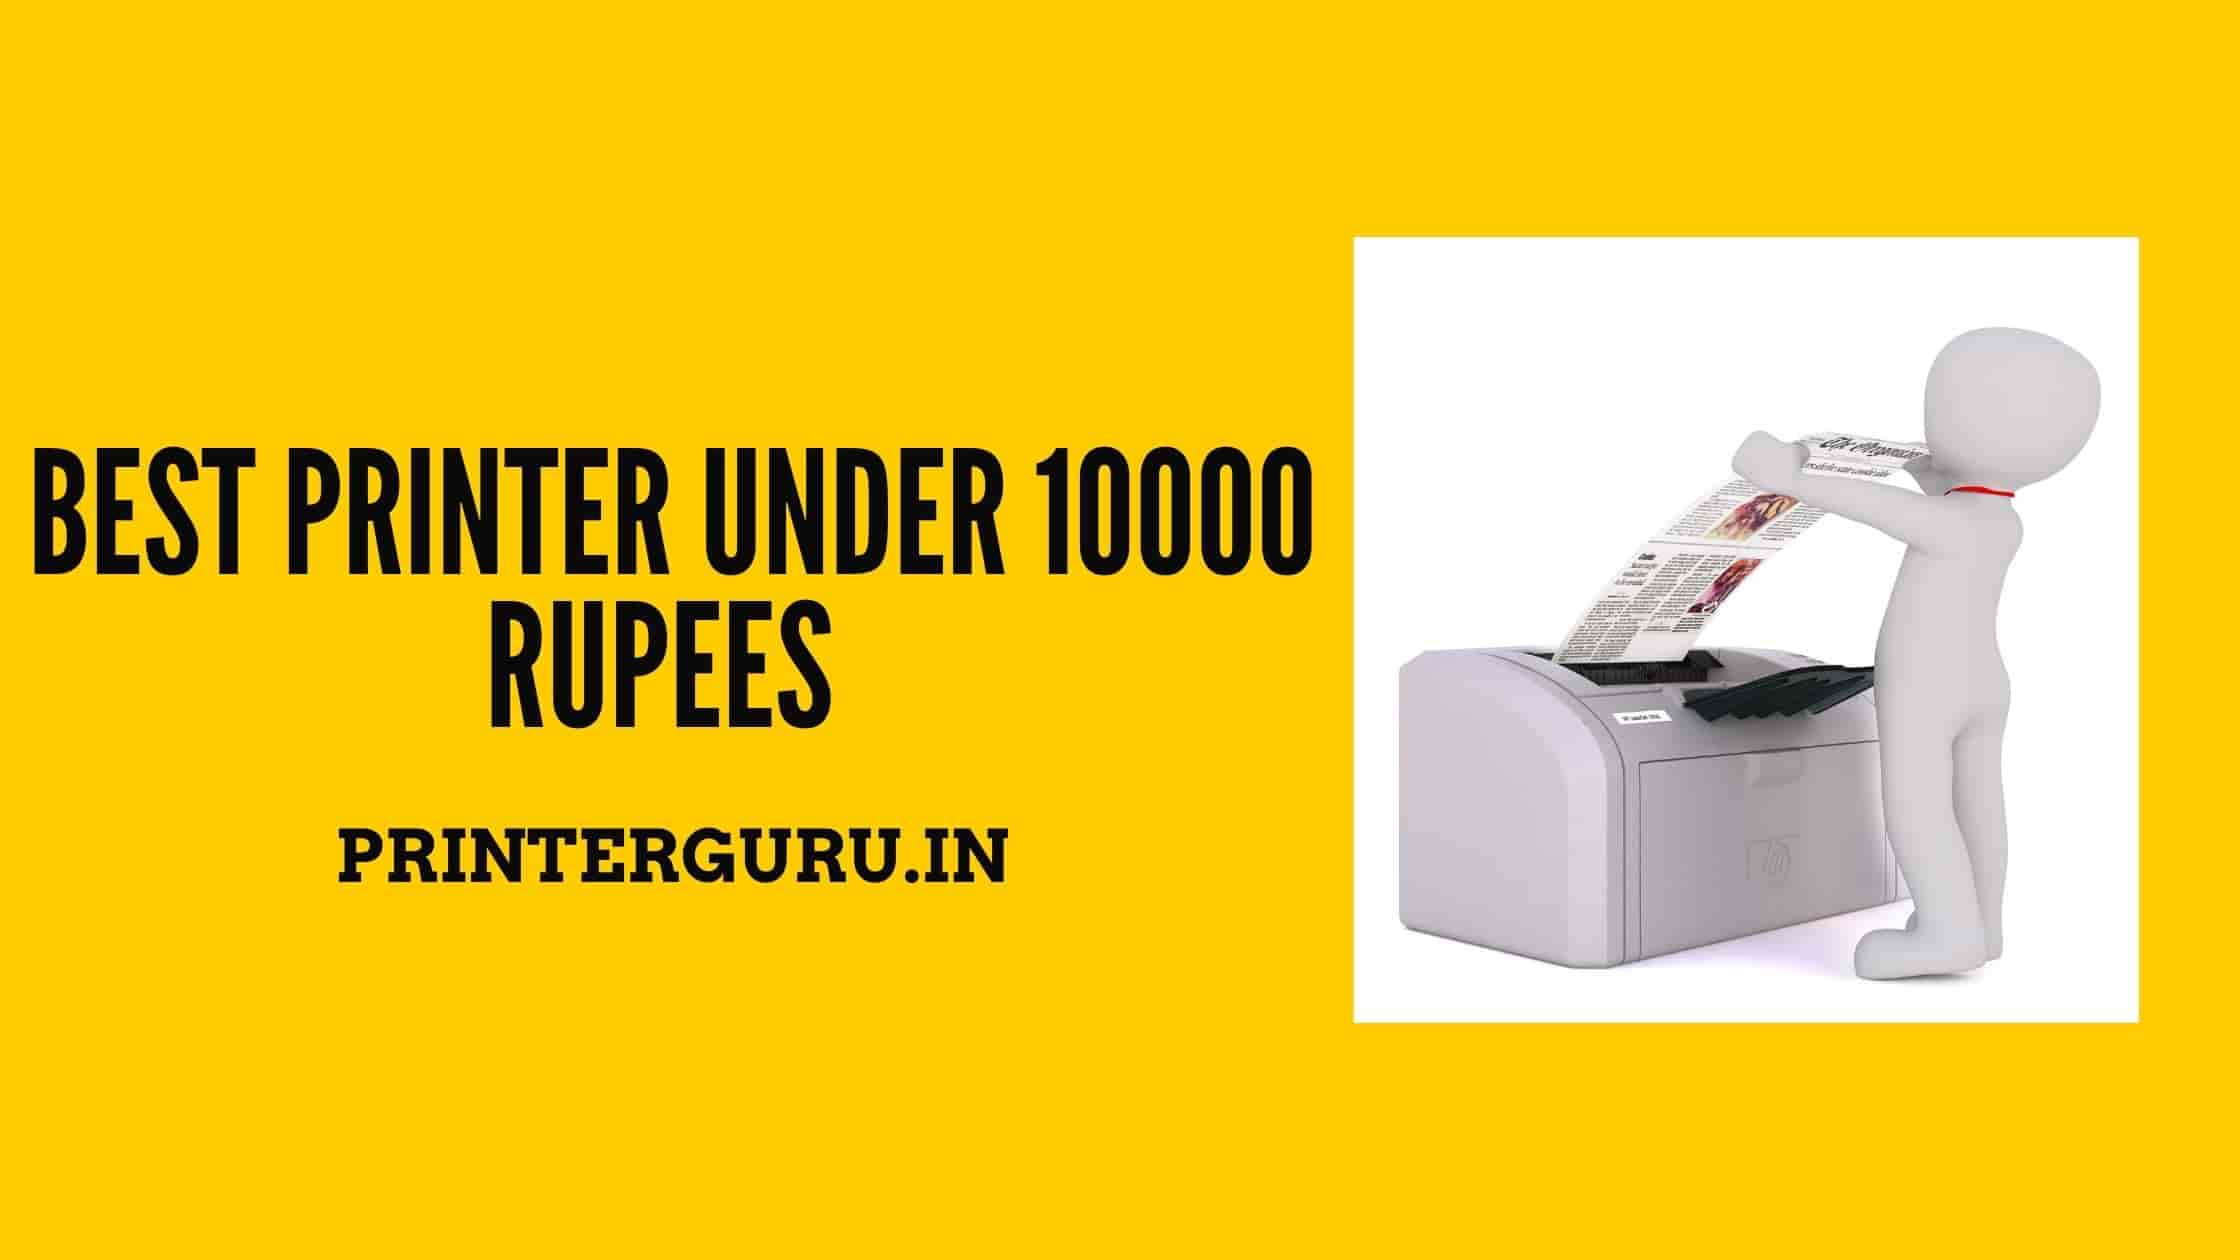 Best Printer Under 10000 Rupees